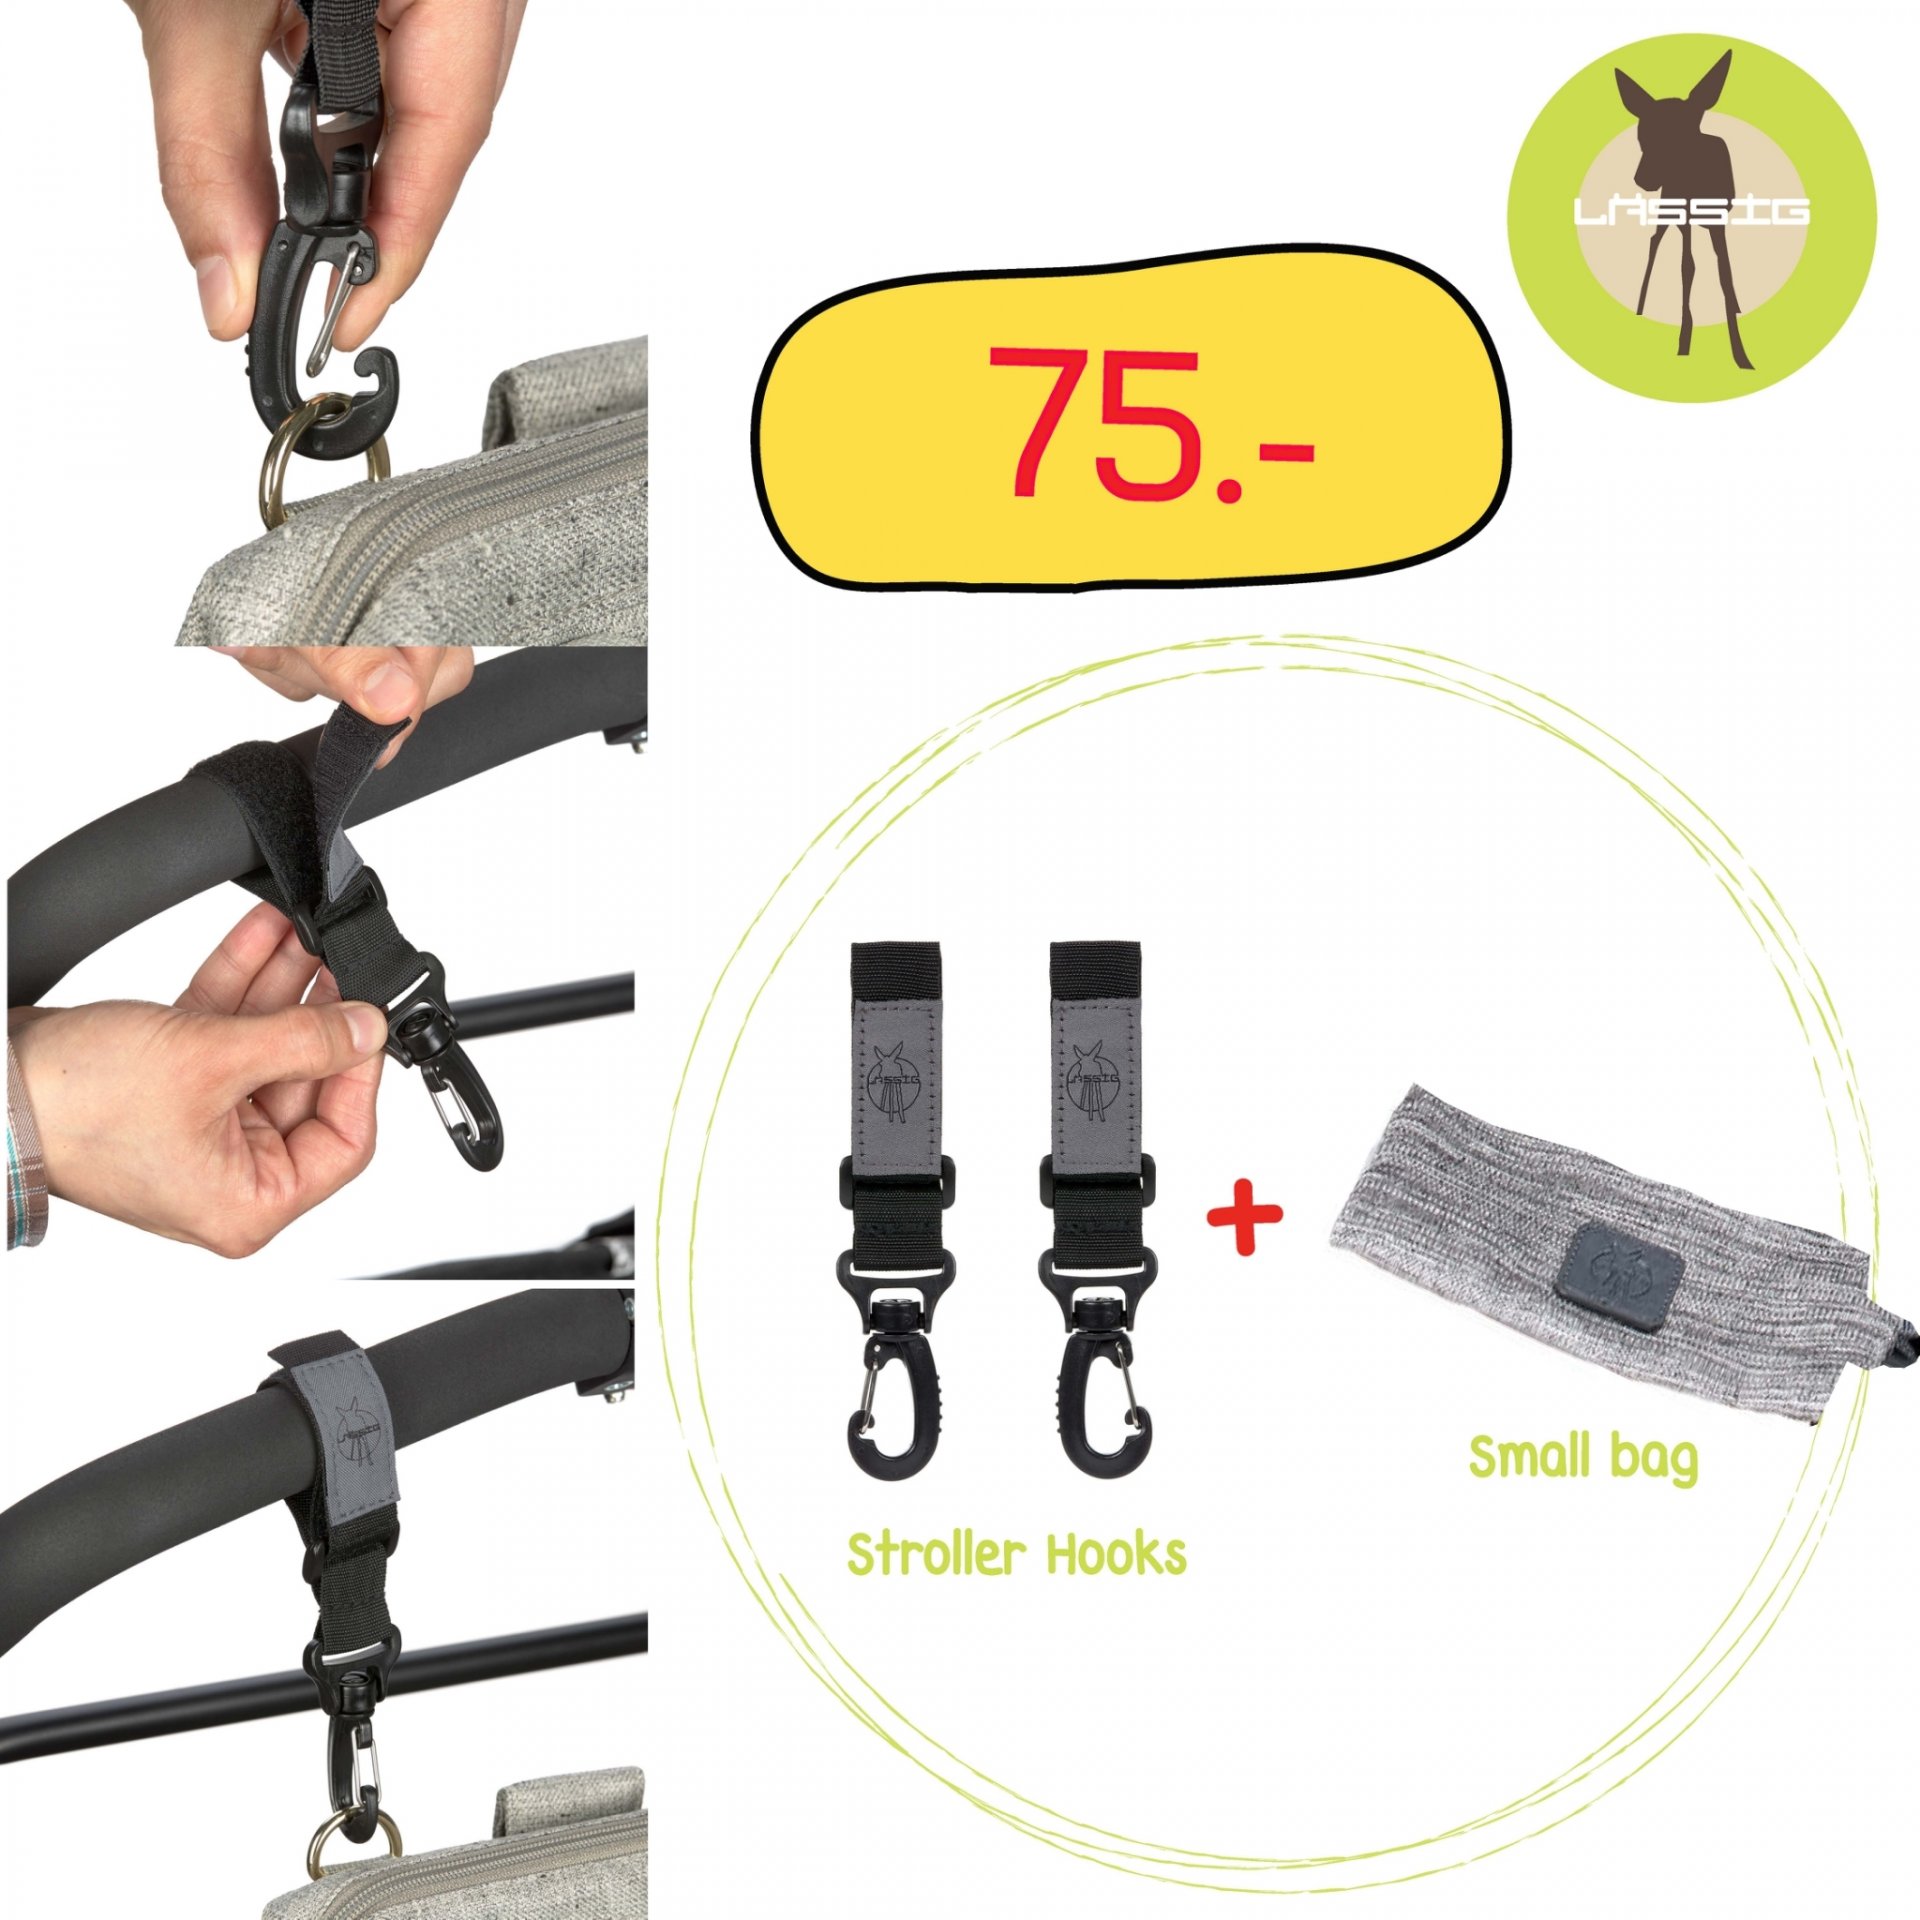 Stroller Hooks + Small bag